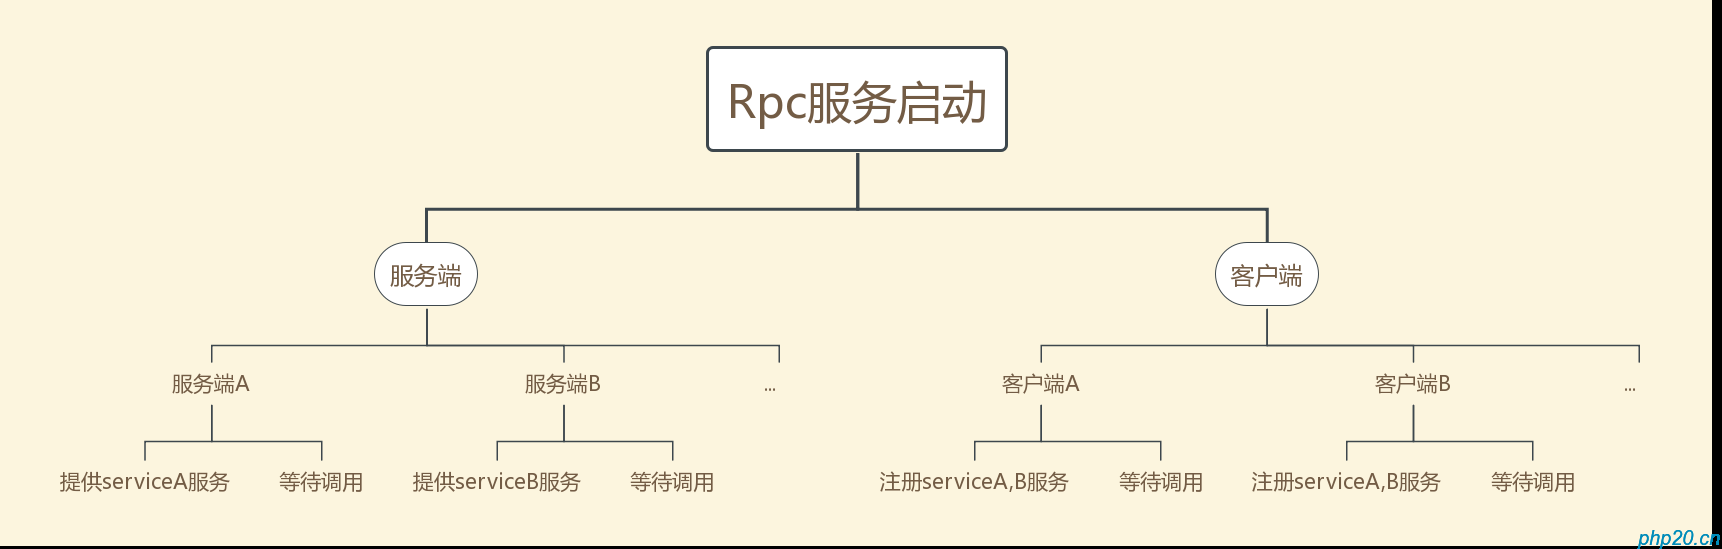 Rpc的实现原理以及实现一个简单的Rpc